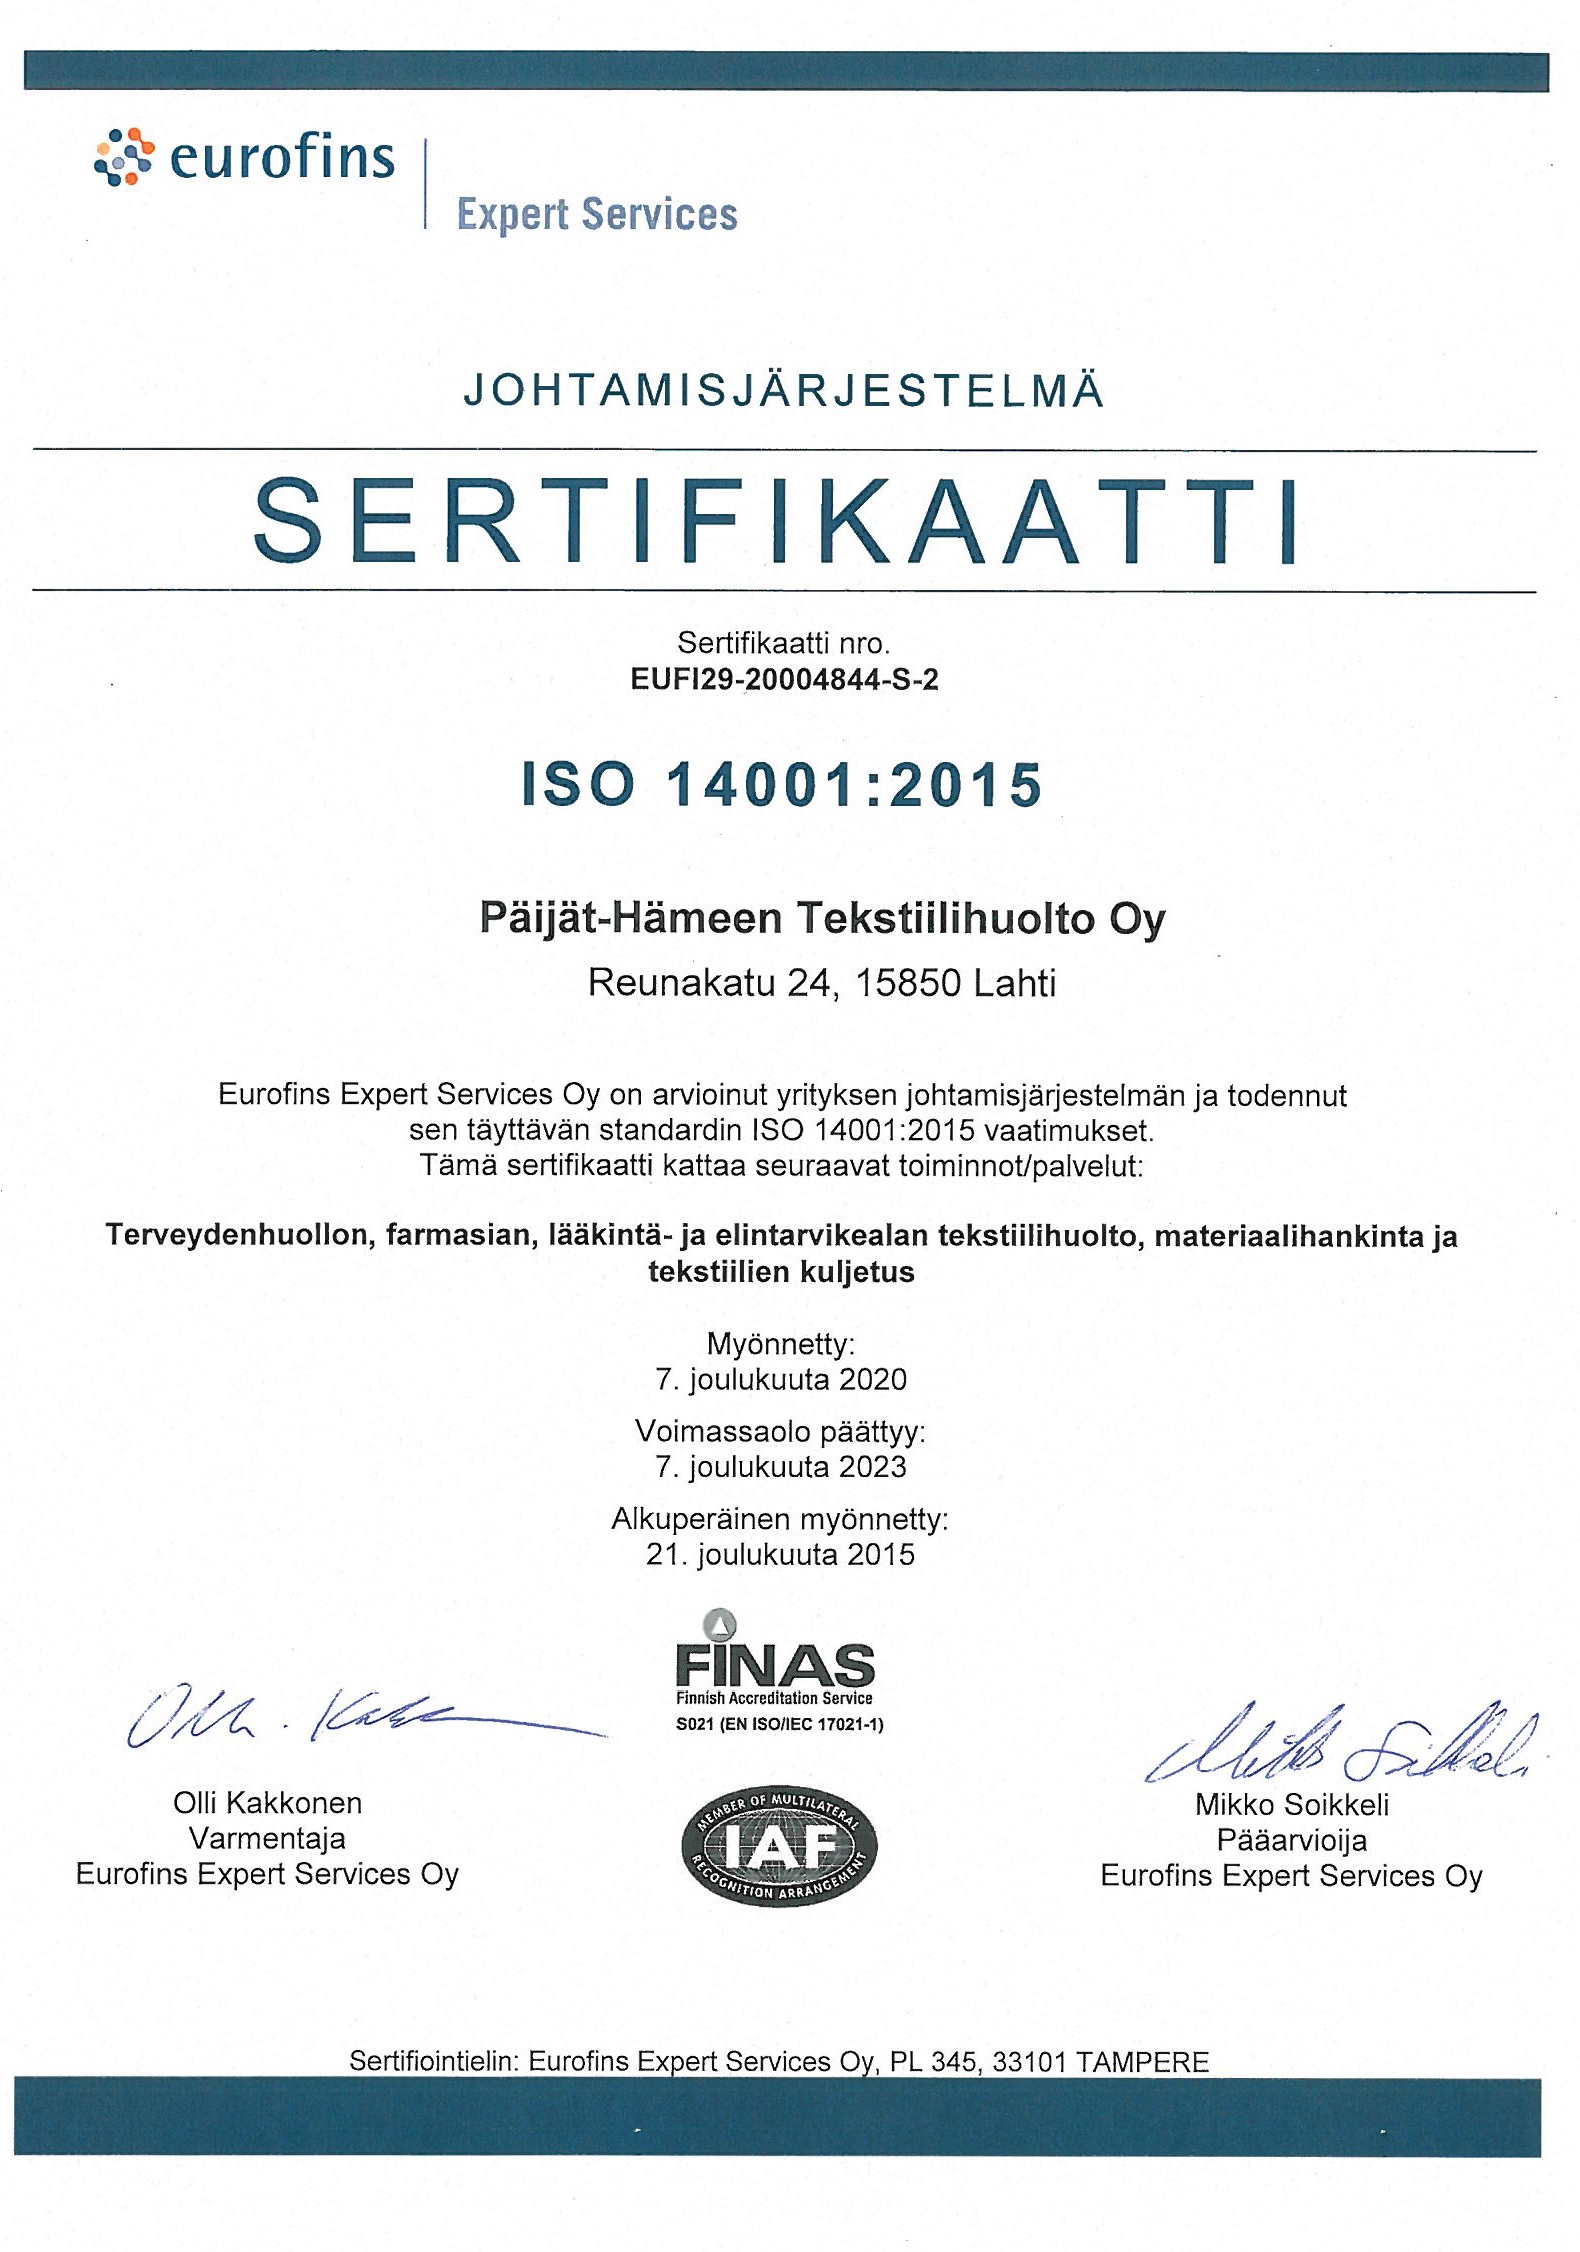 ISO 14001 sertifikaatti